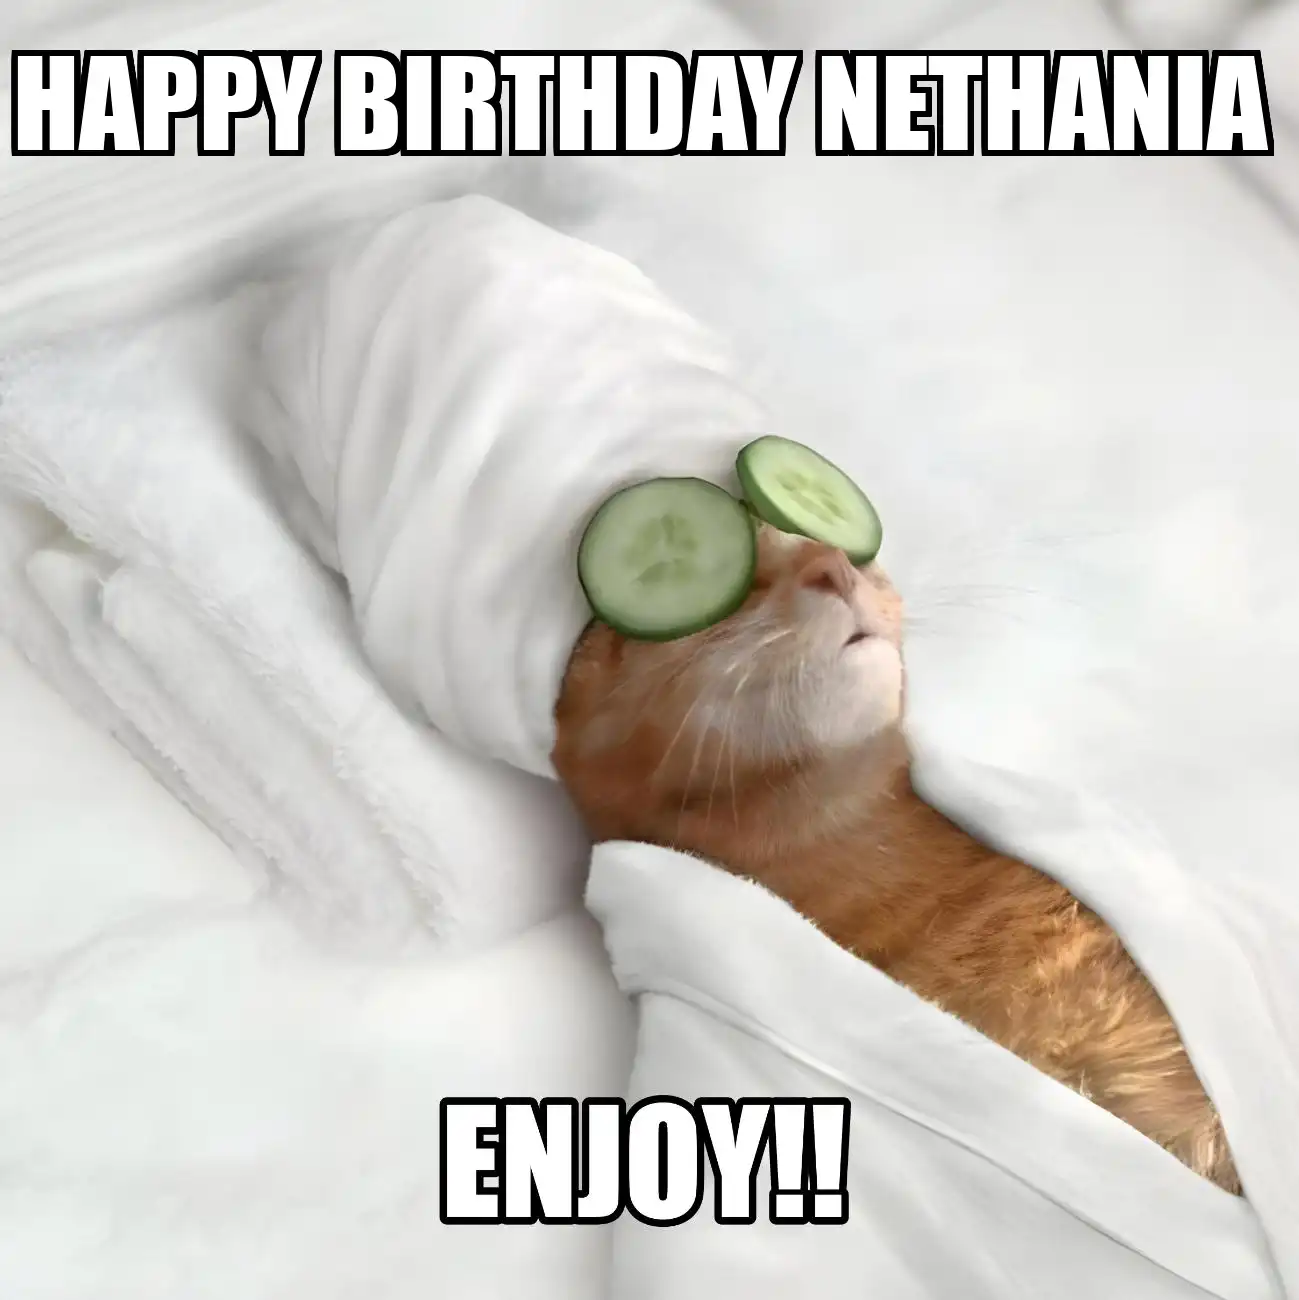 Happy Birthday Nethania Enjoy Cat Meme